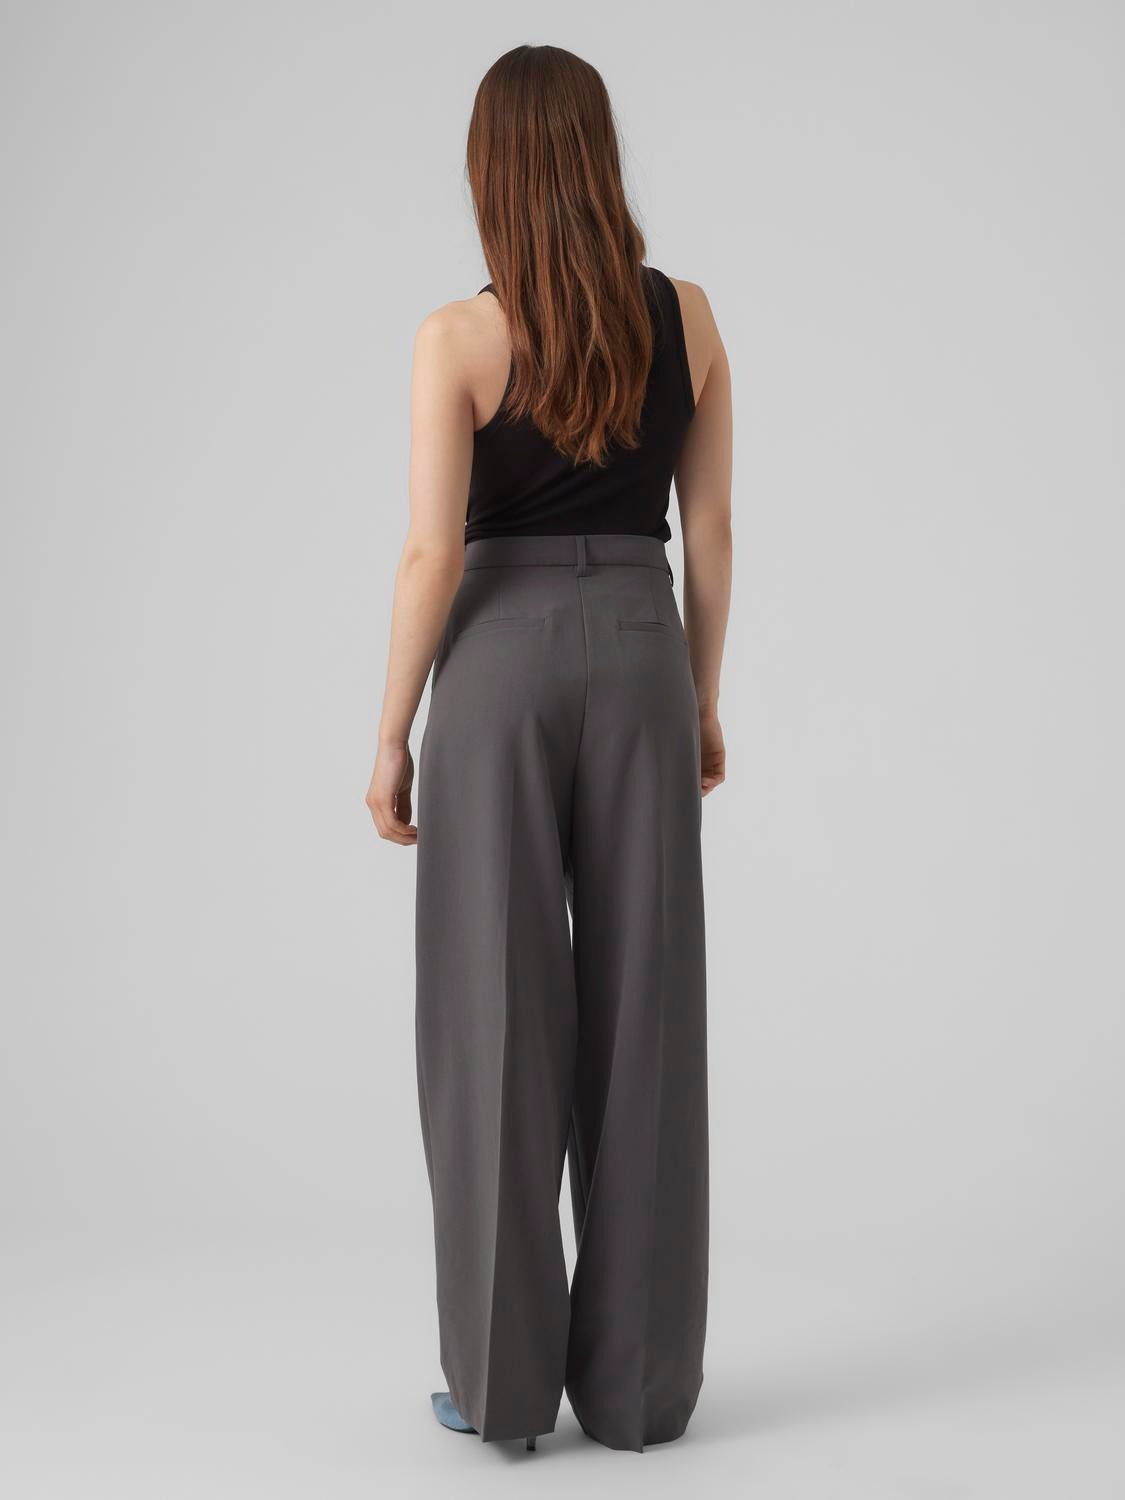 Vero Moda VMTROIAN Spodnie -Grey Pinstripe - 10284343